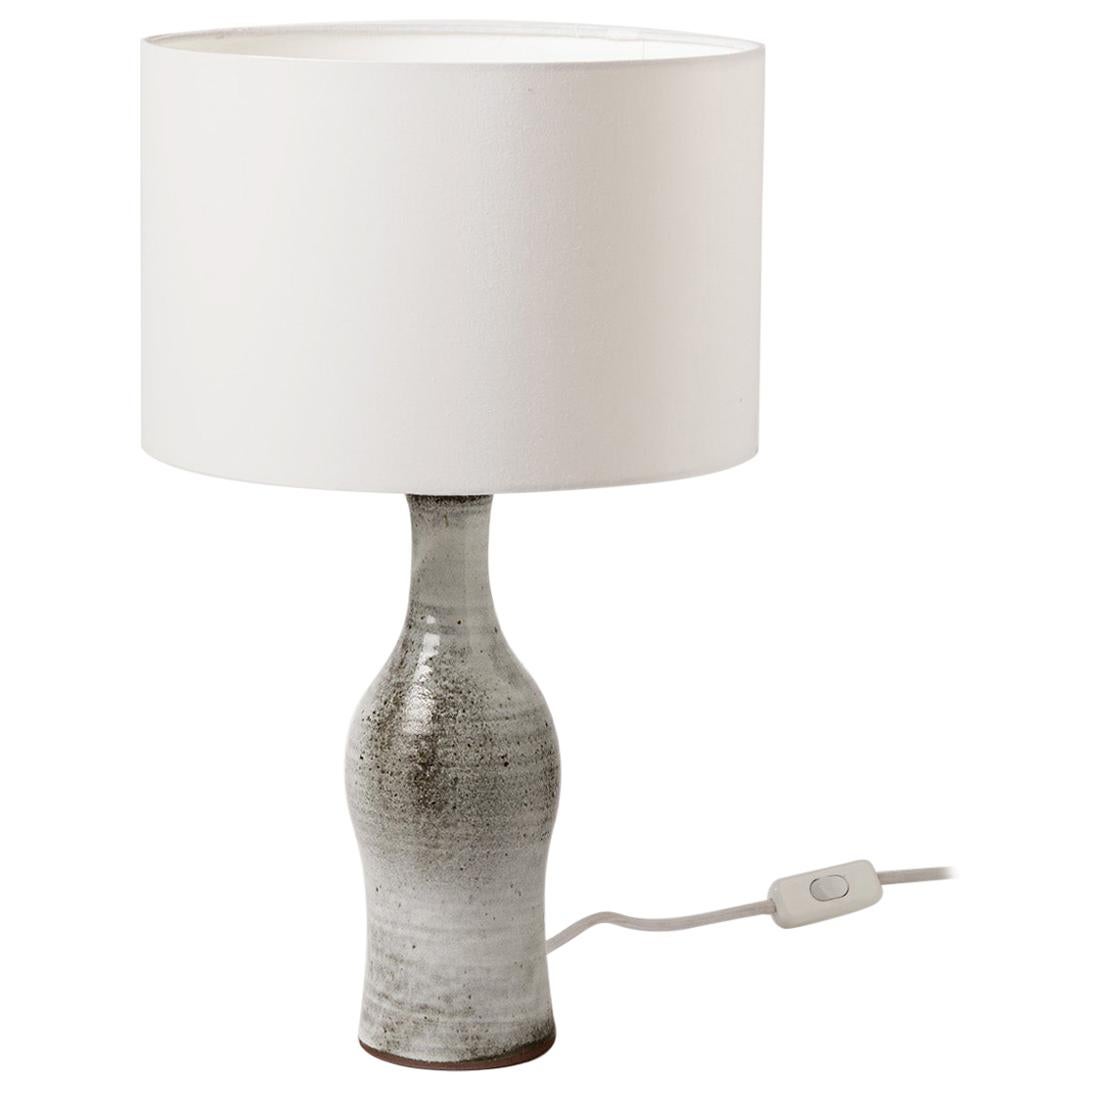 Norbert Pierlot circa 1950 Elégante lampe de table en céramique blanche et grise Design